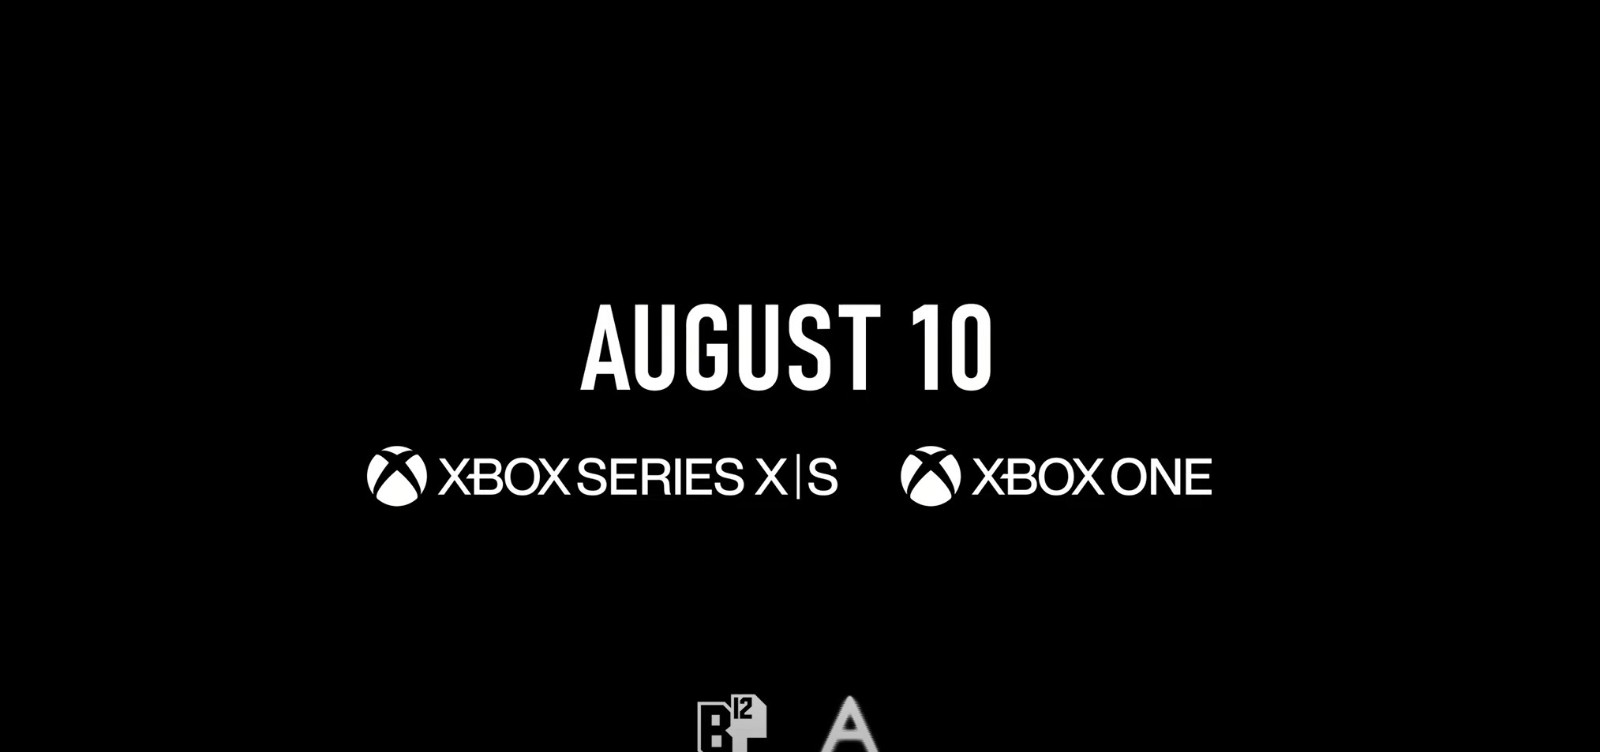 好评游戏《迷失》将于8月10日登陆Xbox One、Xbox Series X/S